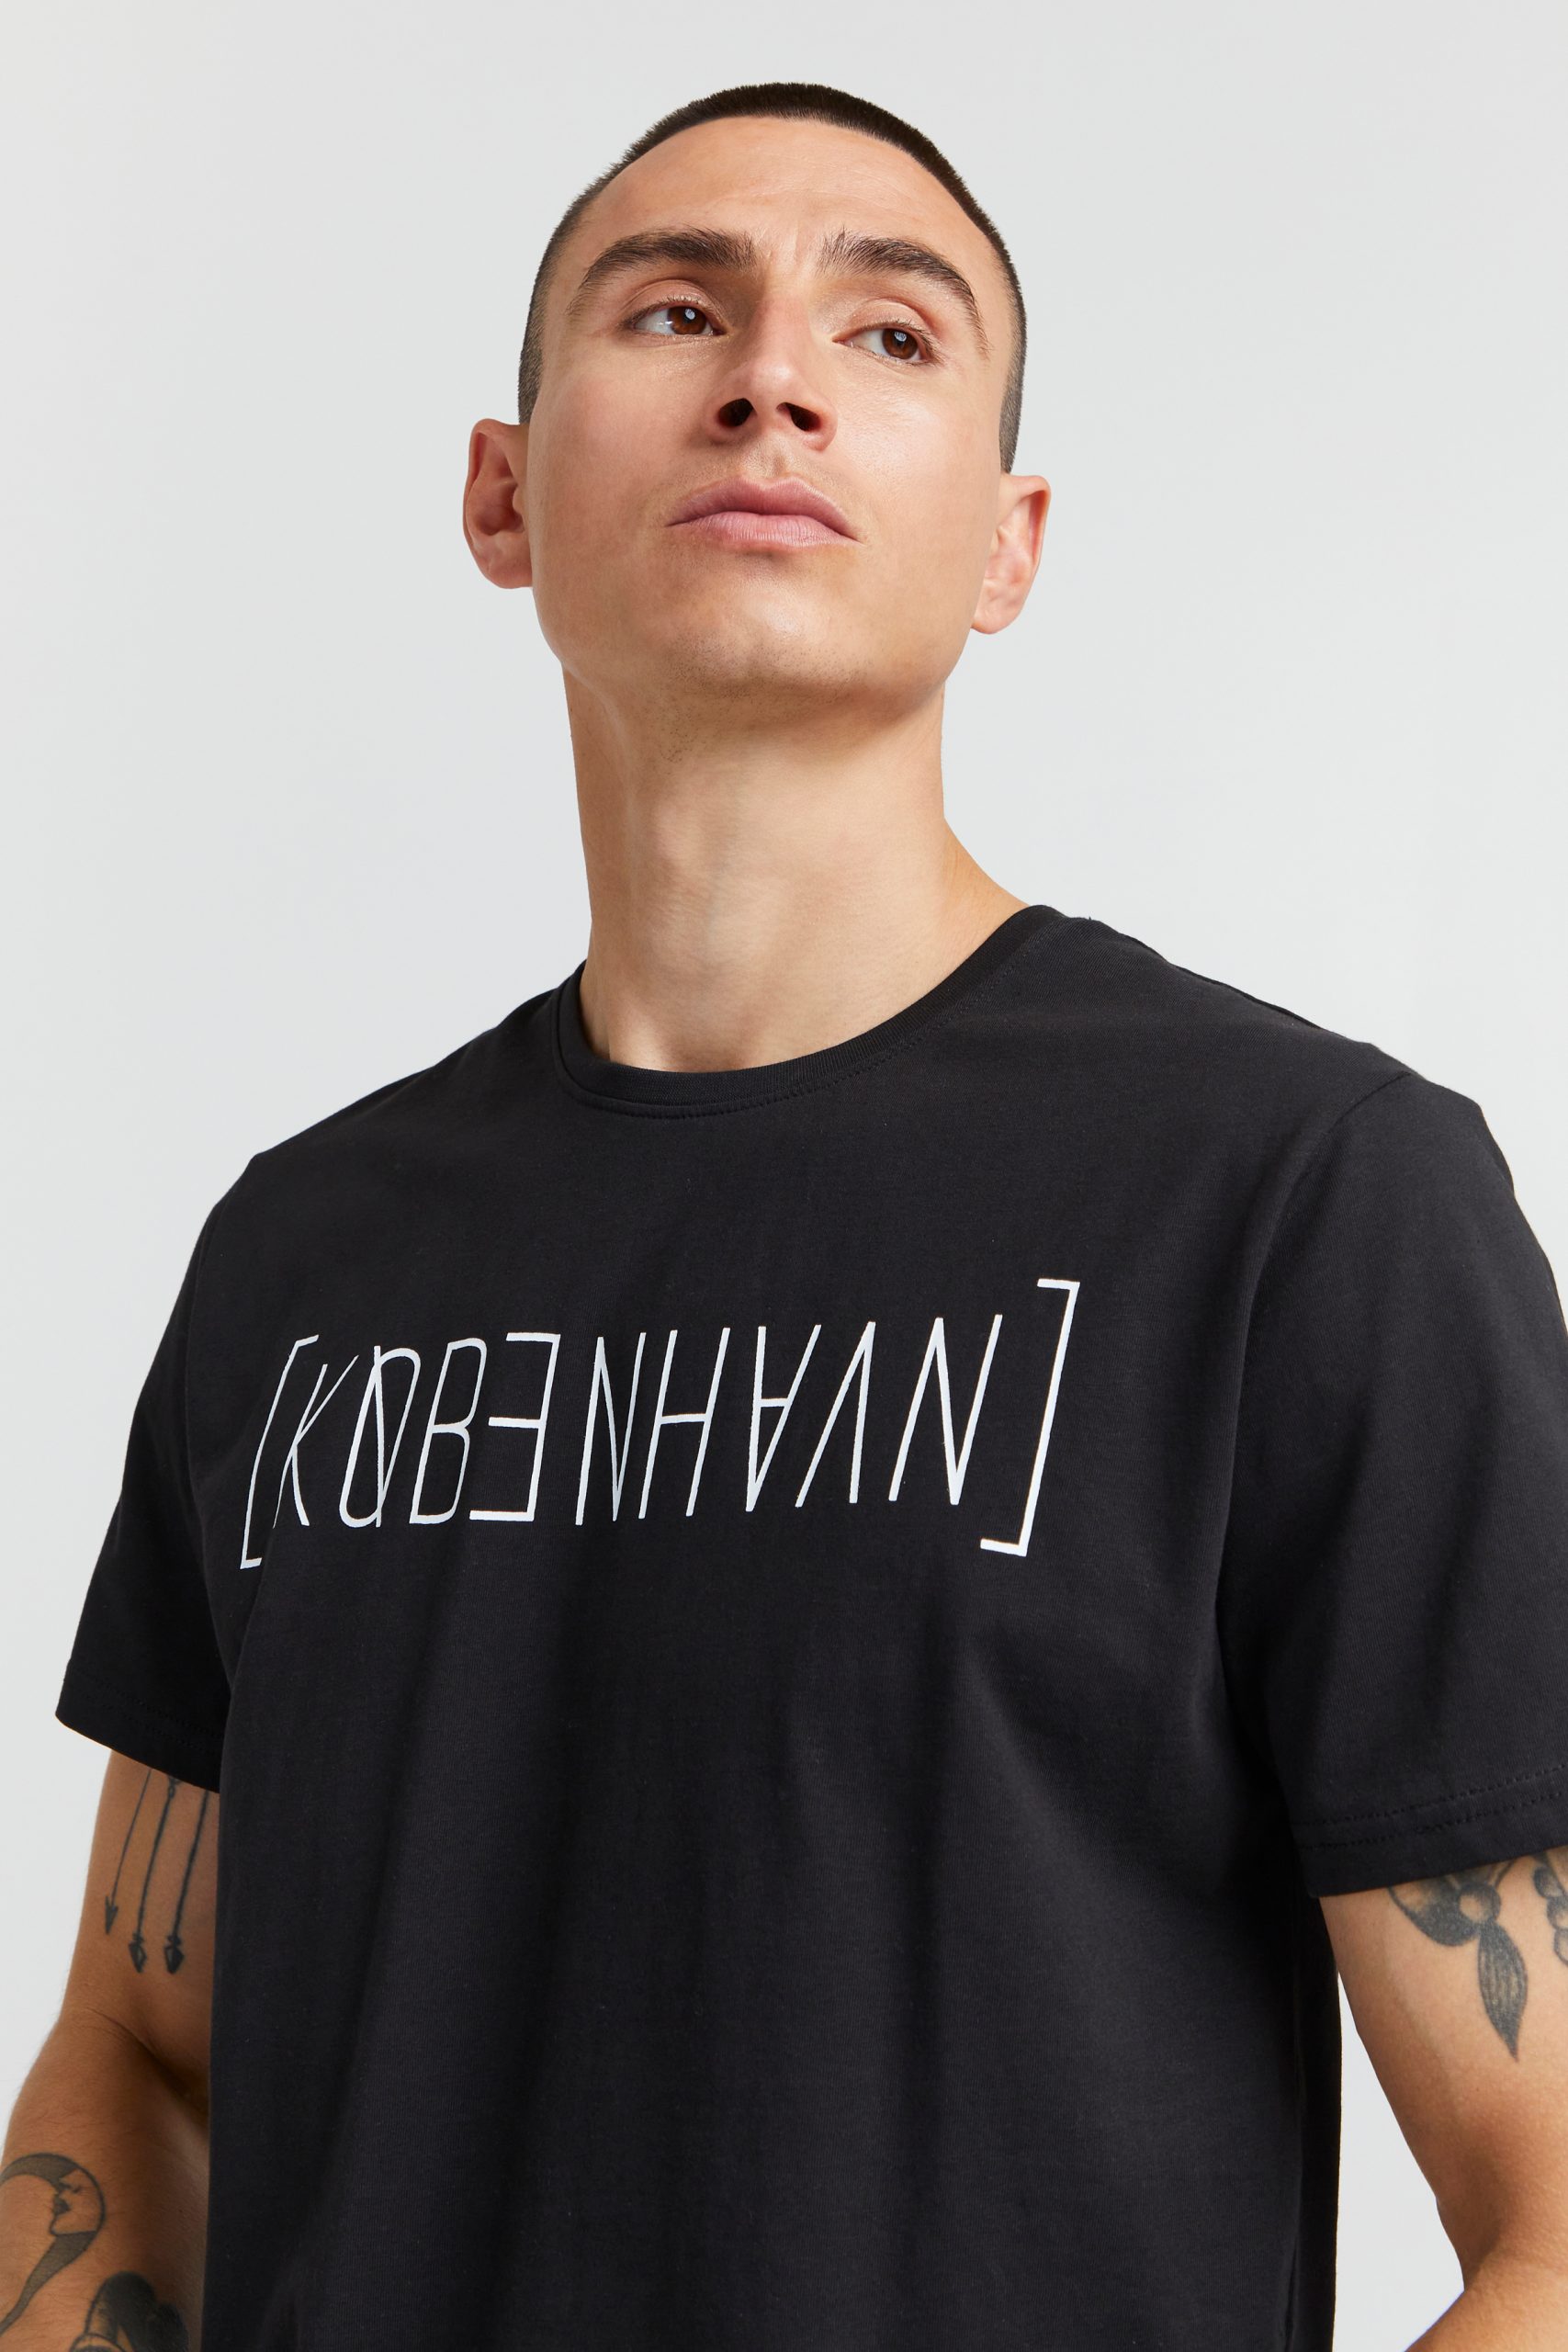 København T-Shirt - Fashion Outlet